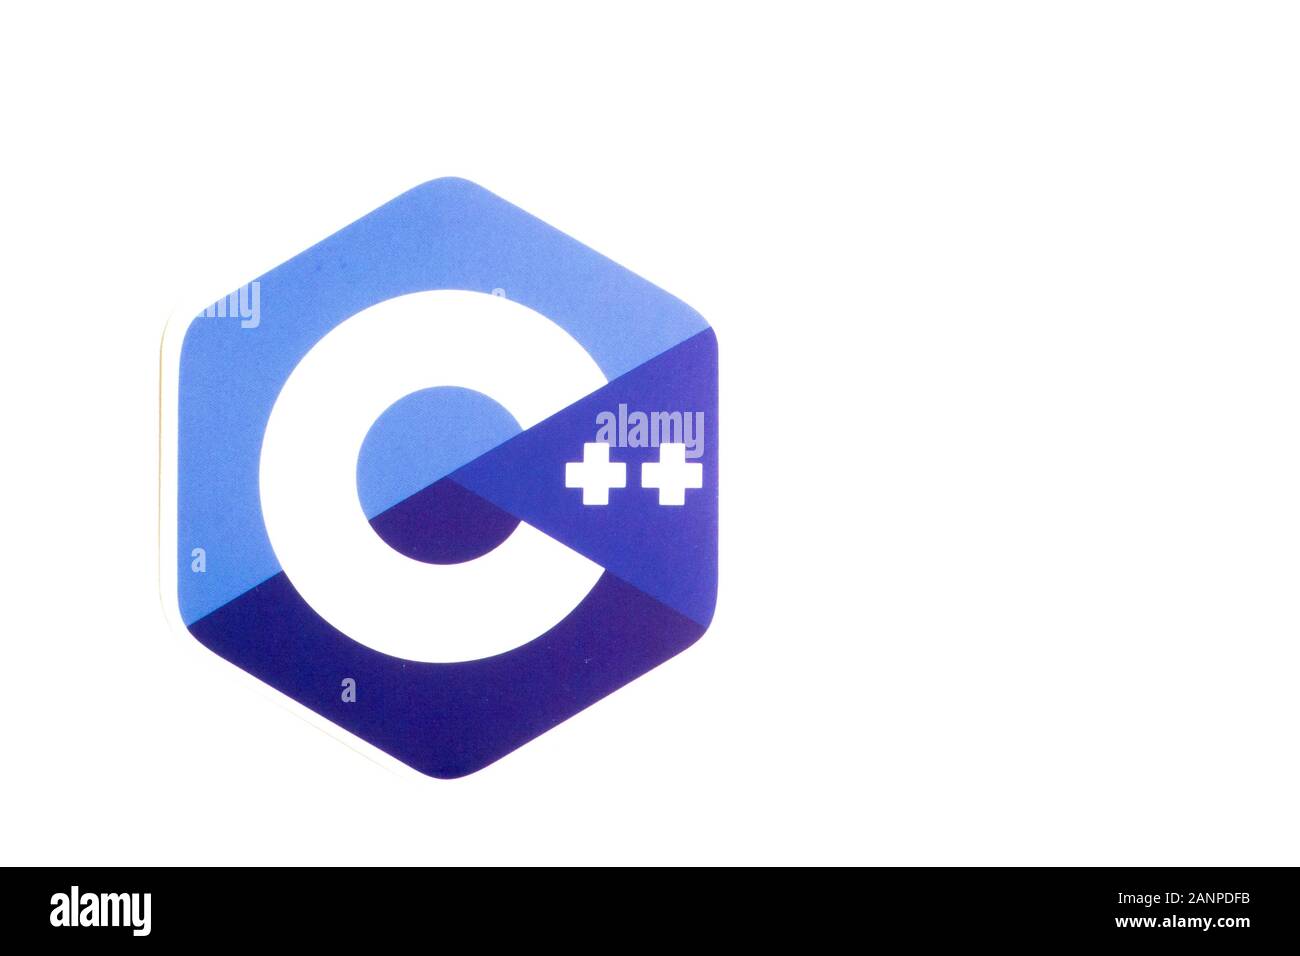 Los Angeles, Californie, États-Unis - 17 janvier 2020: Logo C++ avec espace de copie, éditorial illustratif Banque D'Images